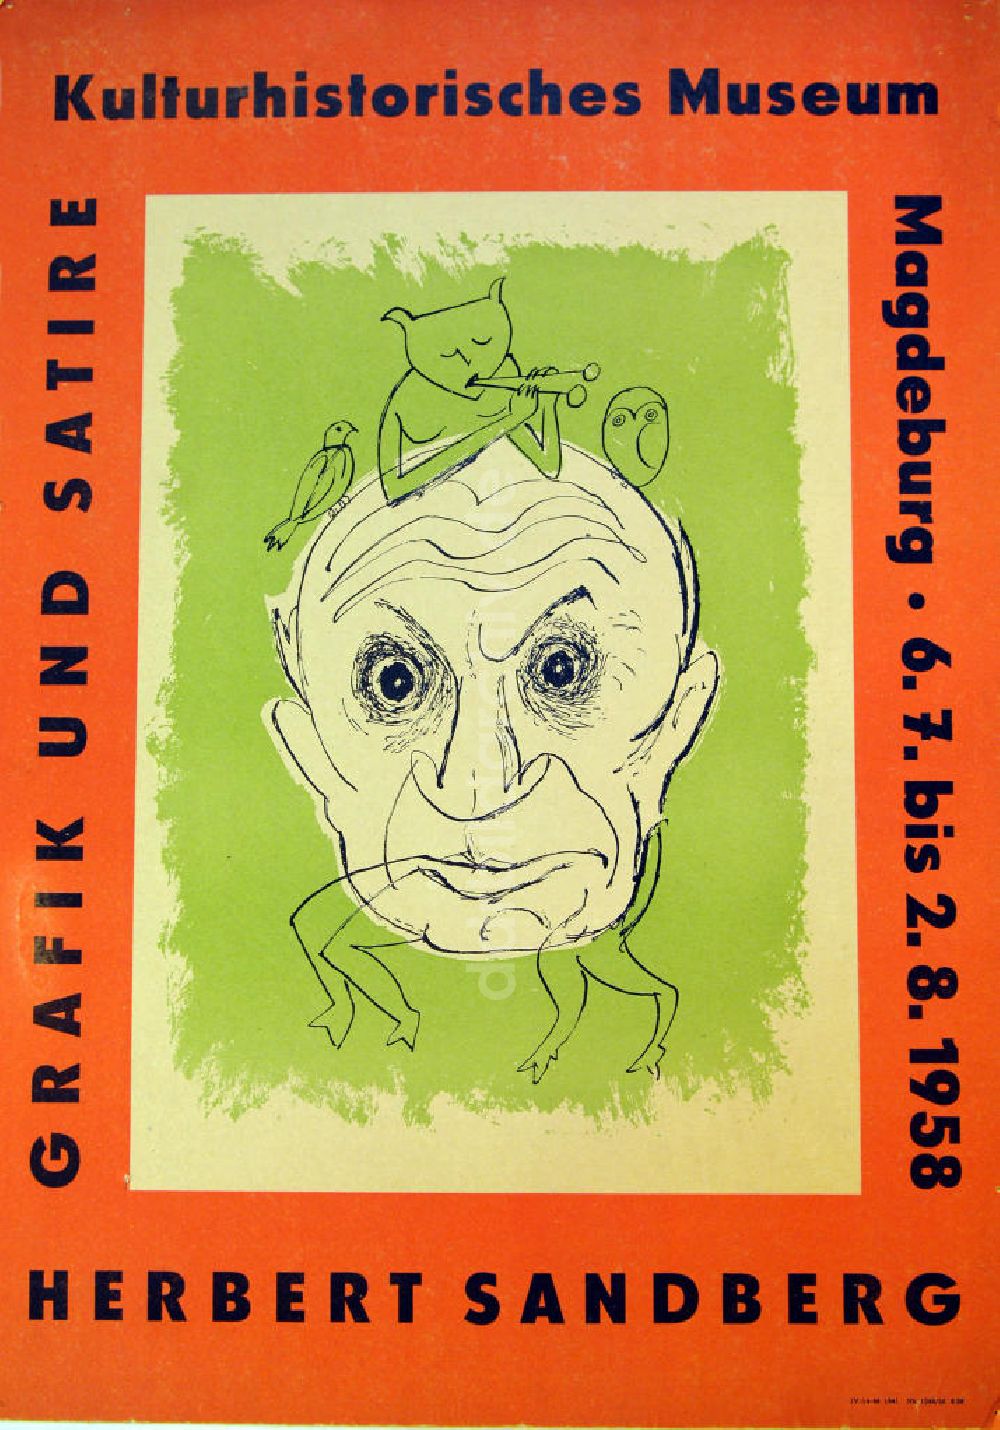 DDR-Bildarchiv: Berlin - Plakat von der Ausstellung Grafik und Satire, Herbert Sandberg aus dem Jahr 1958